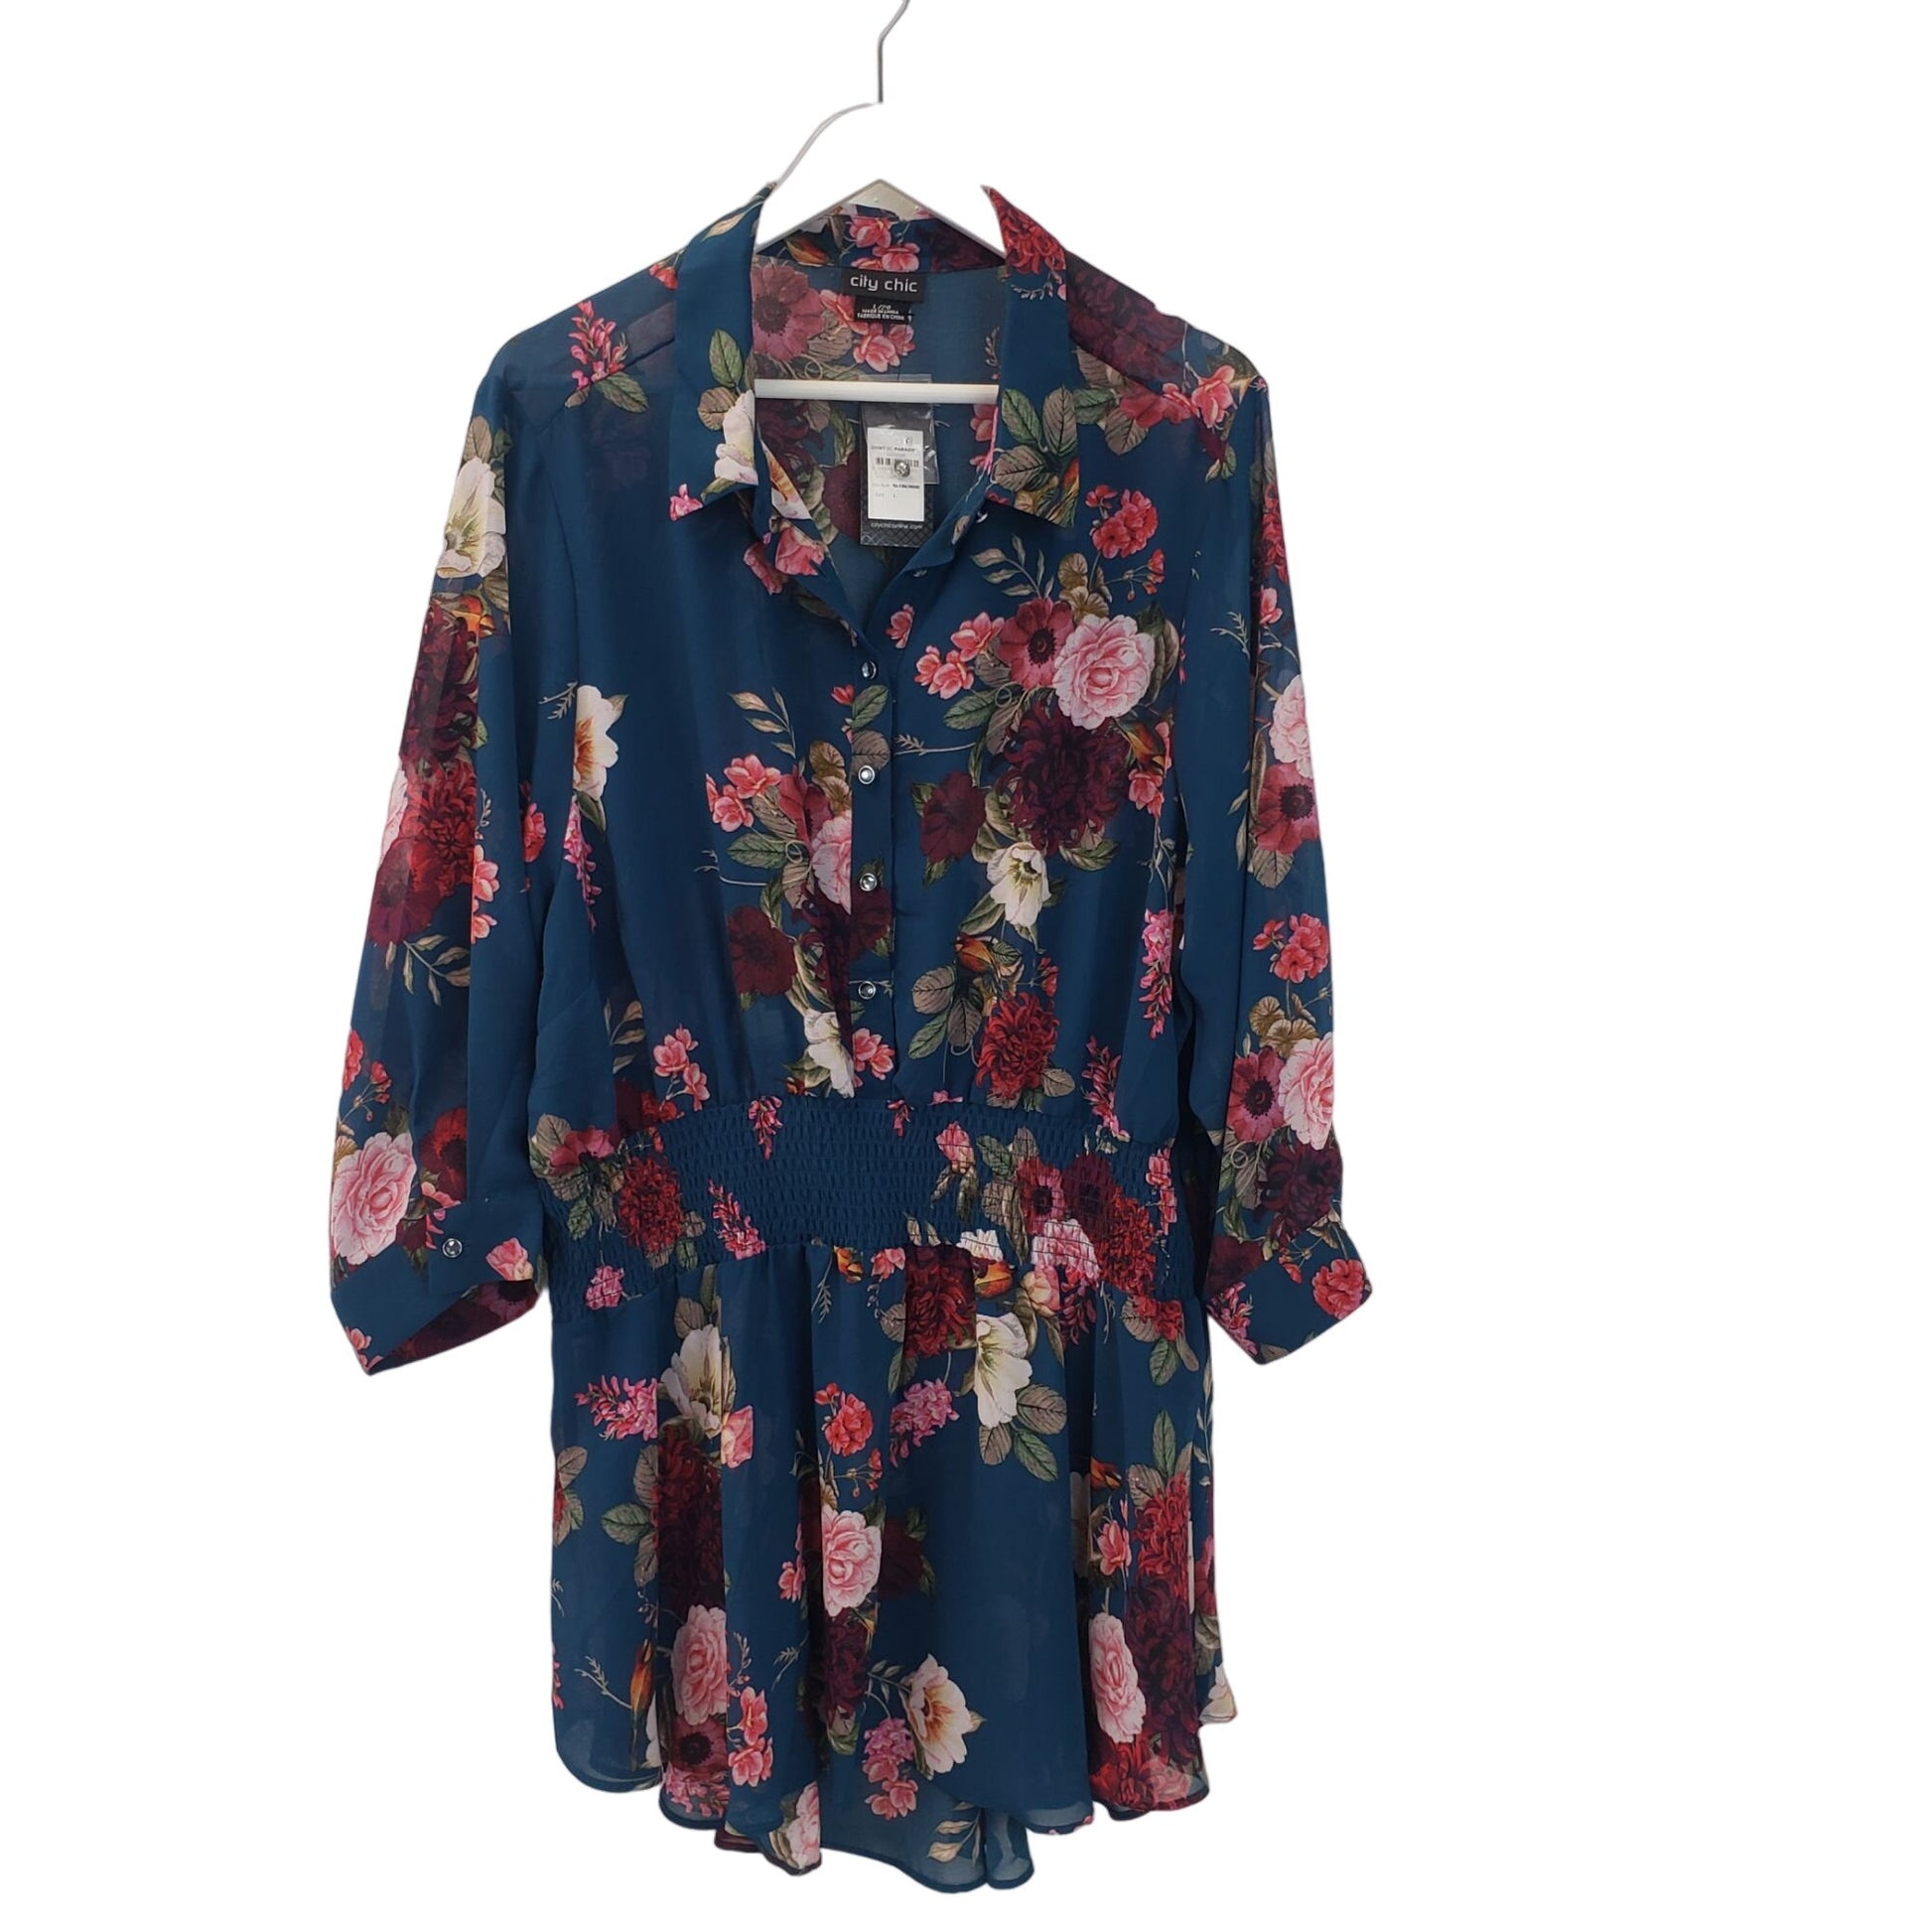 J. Jill Love Linen Floral Essential Button Down Shirt Size Medium